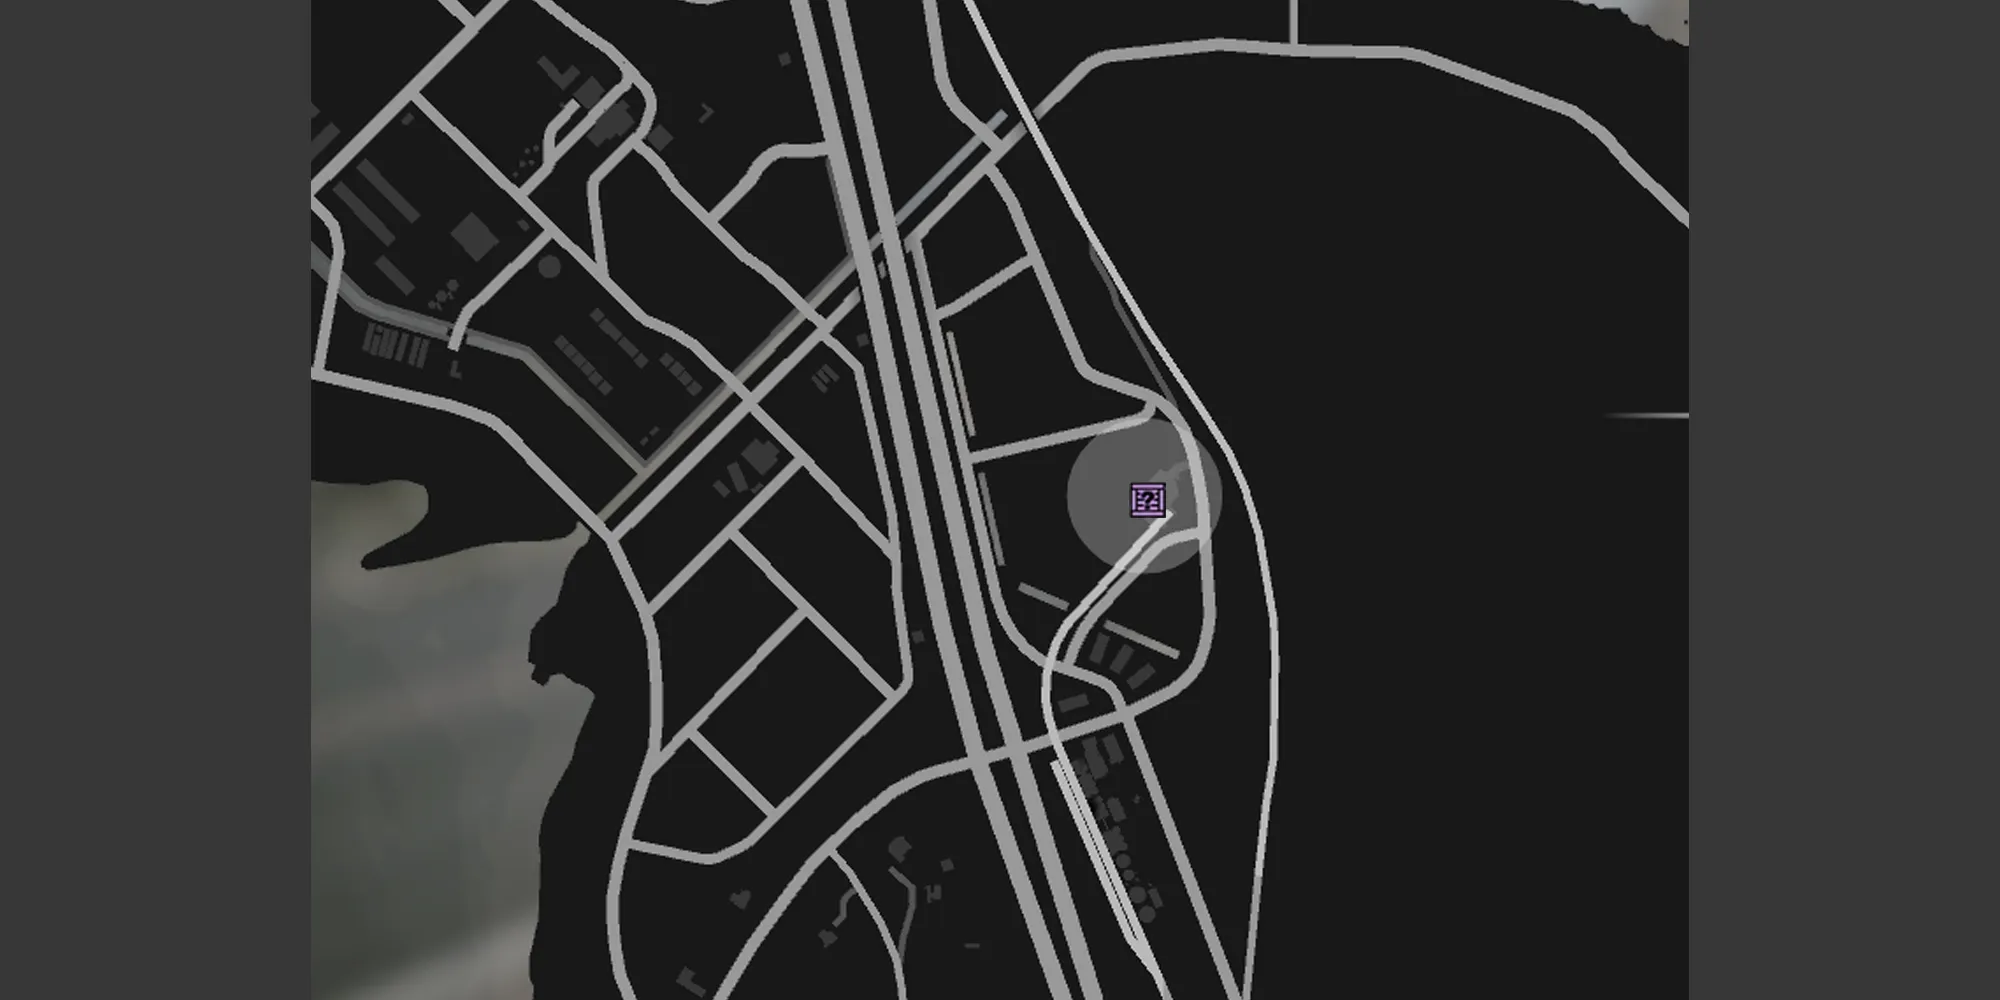 画像はグレープシード鉄道ターミナルの場所を示すGTAオンラインのマップの一部を示しています。この場所は灰色の円と紫色のG's Cacheボックスのアイコンで表示されています。